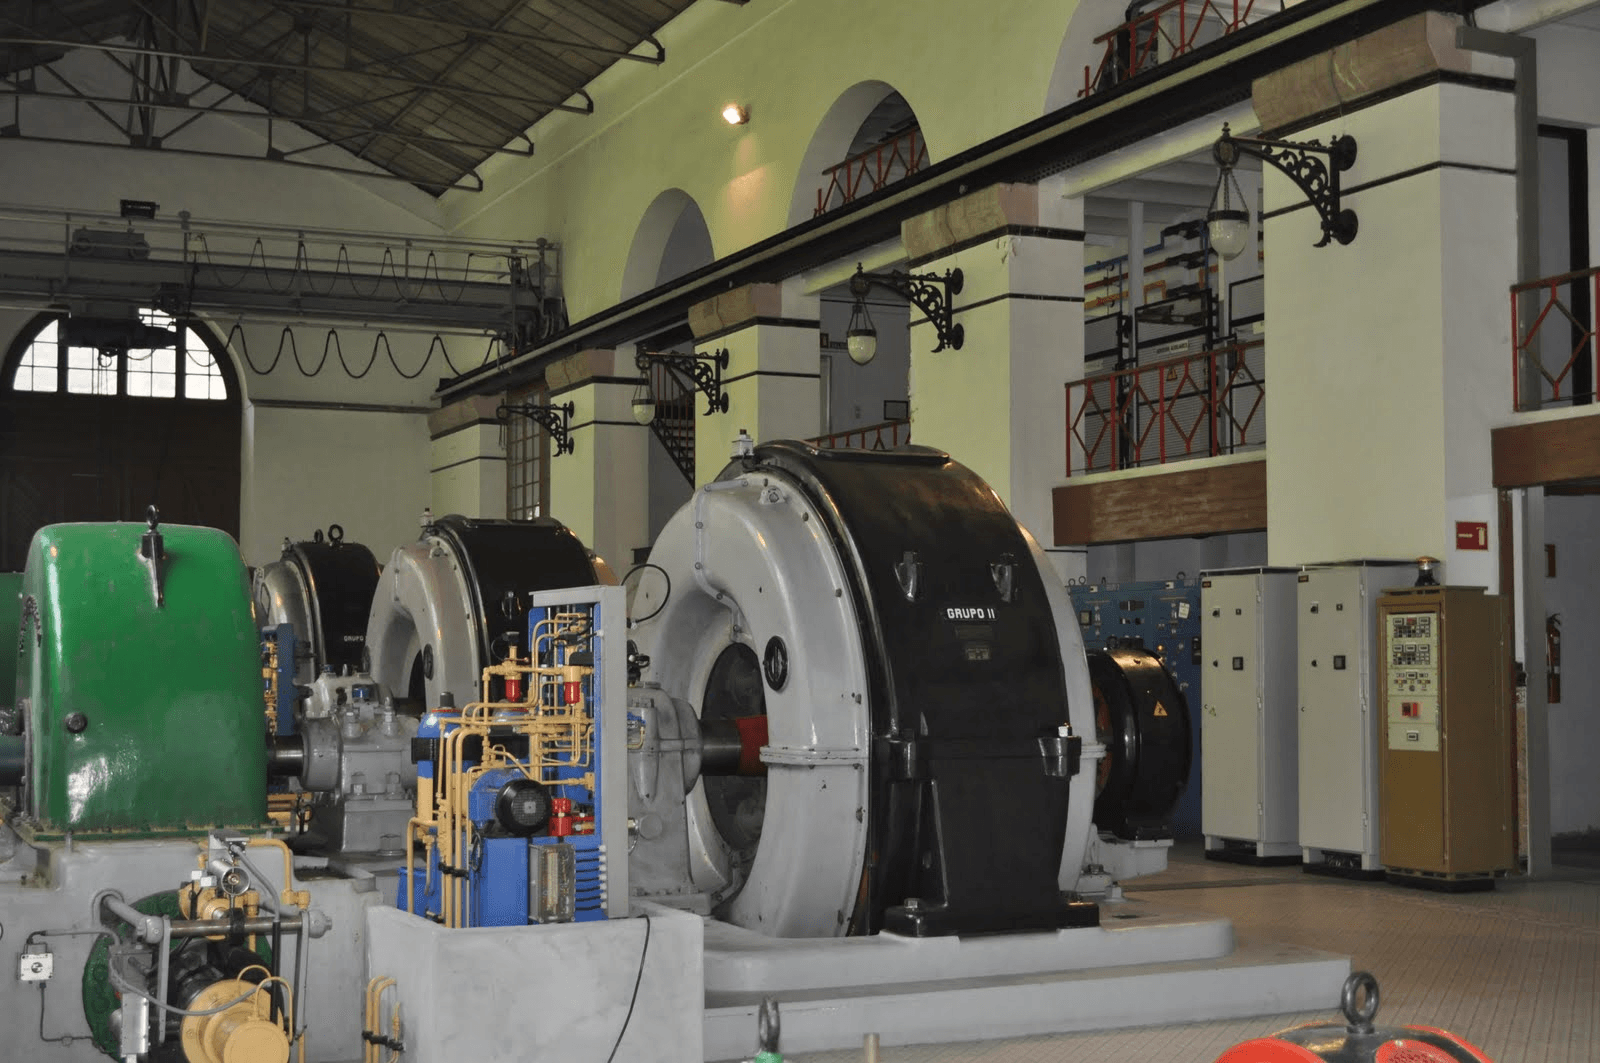 Imágenes del punto de interés Central Hidroeléctrica de La Malva